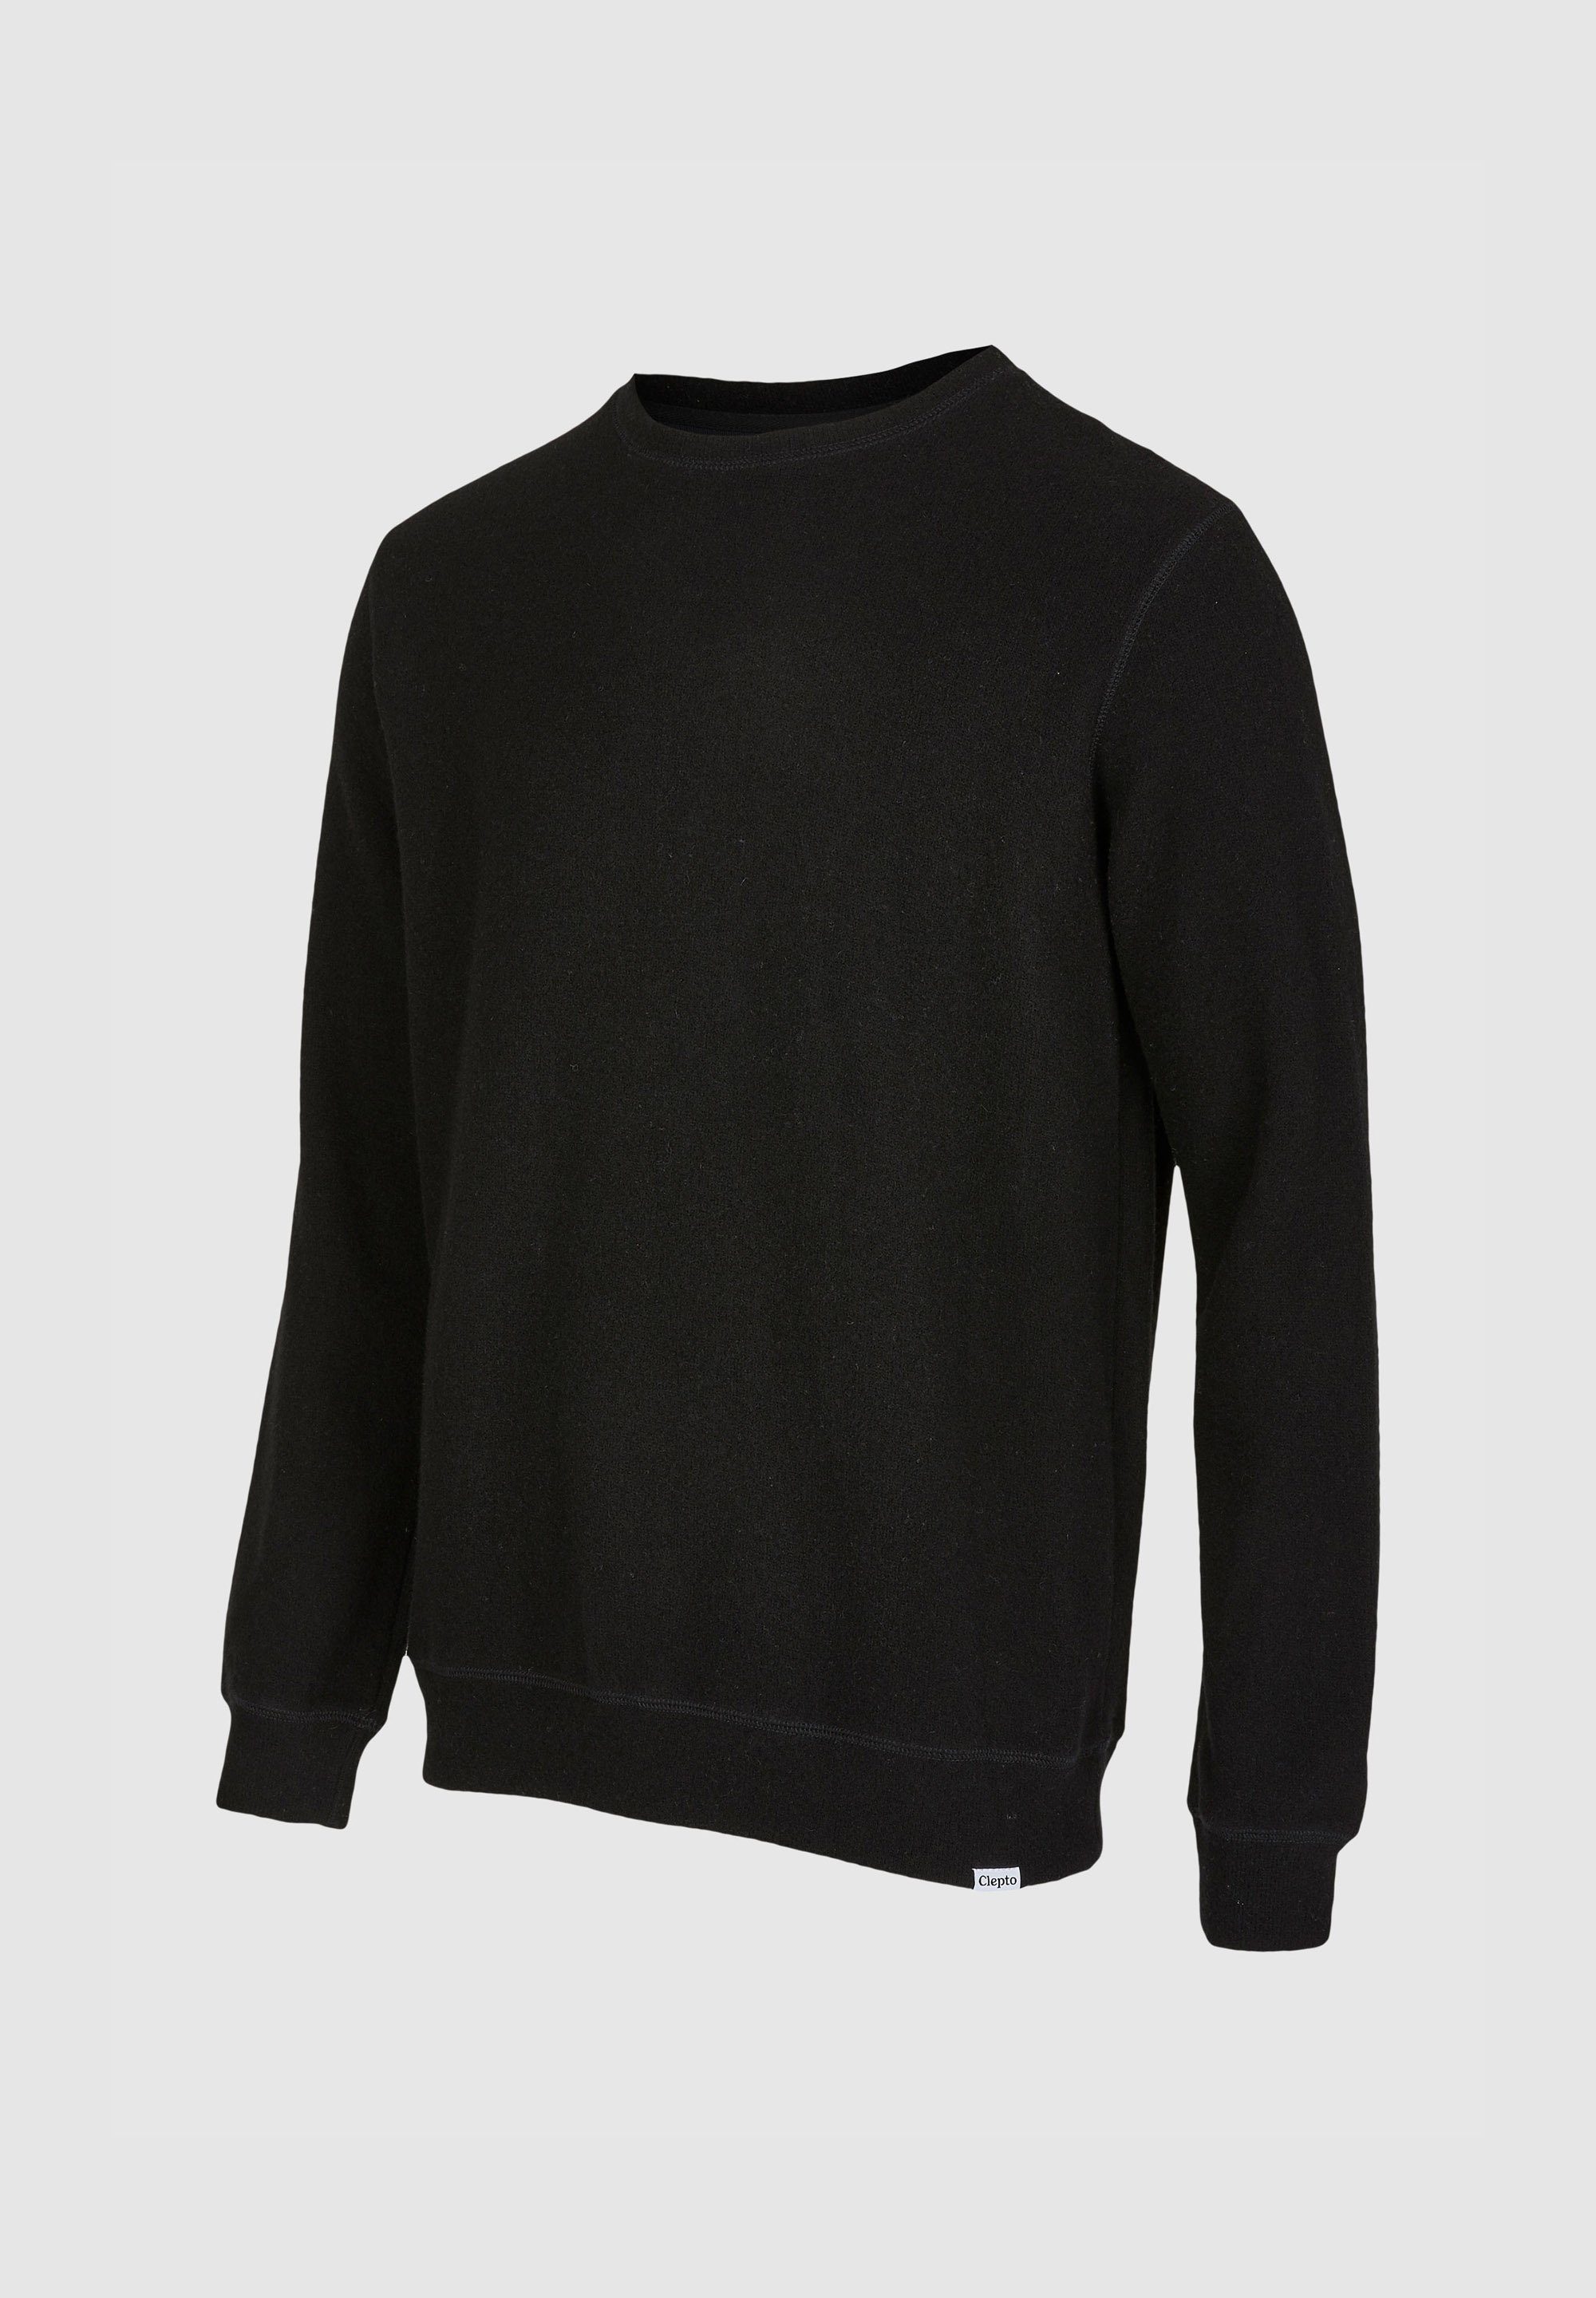 Noitch gebondeter Sweatshirt Cleptomanicx schwarz aus Wolle